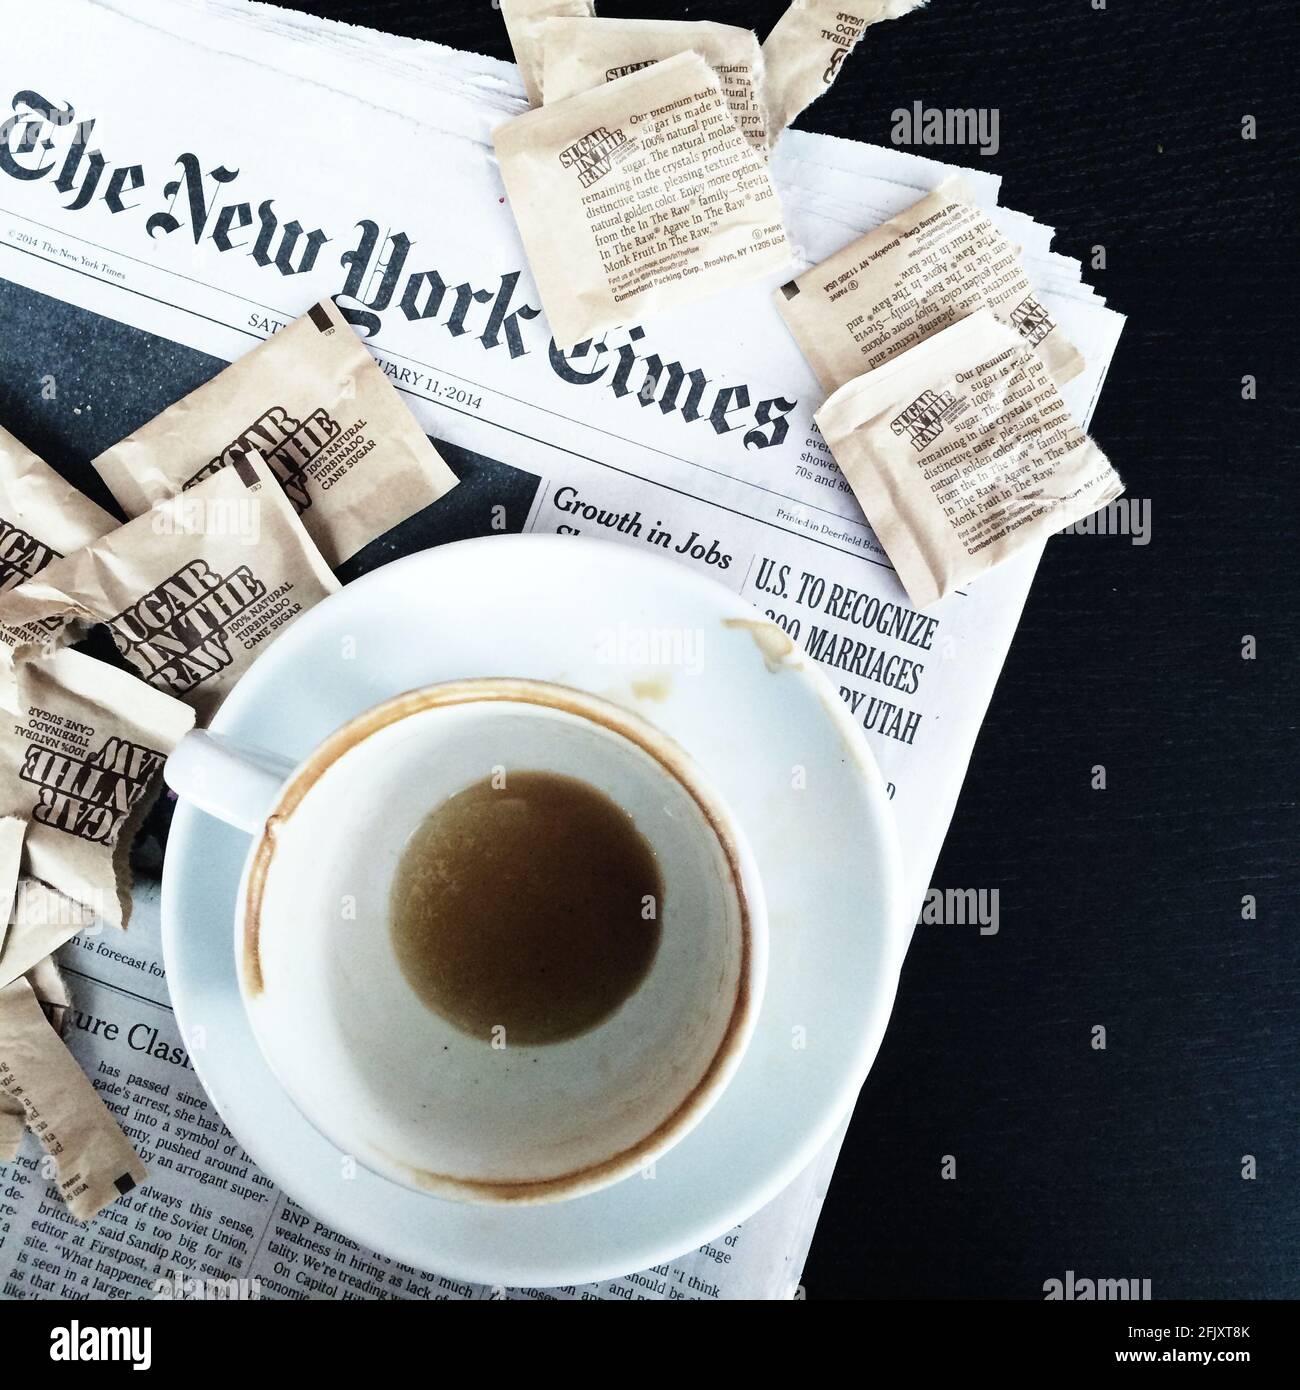 Una tazza di caffè sporca, vuota con i contrassegni di caffè seduti sopra il giornale del New York Times e i pacchetti di zucchero di Sugar nel crudo lo circondano Foto Stock